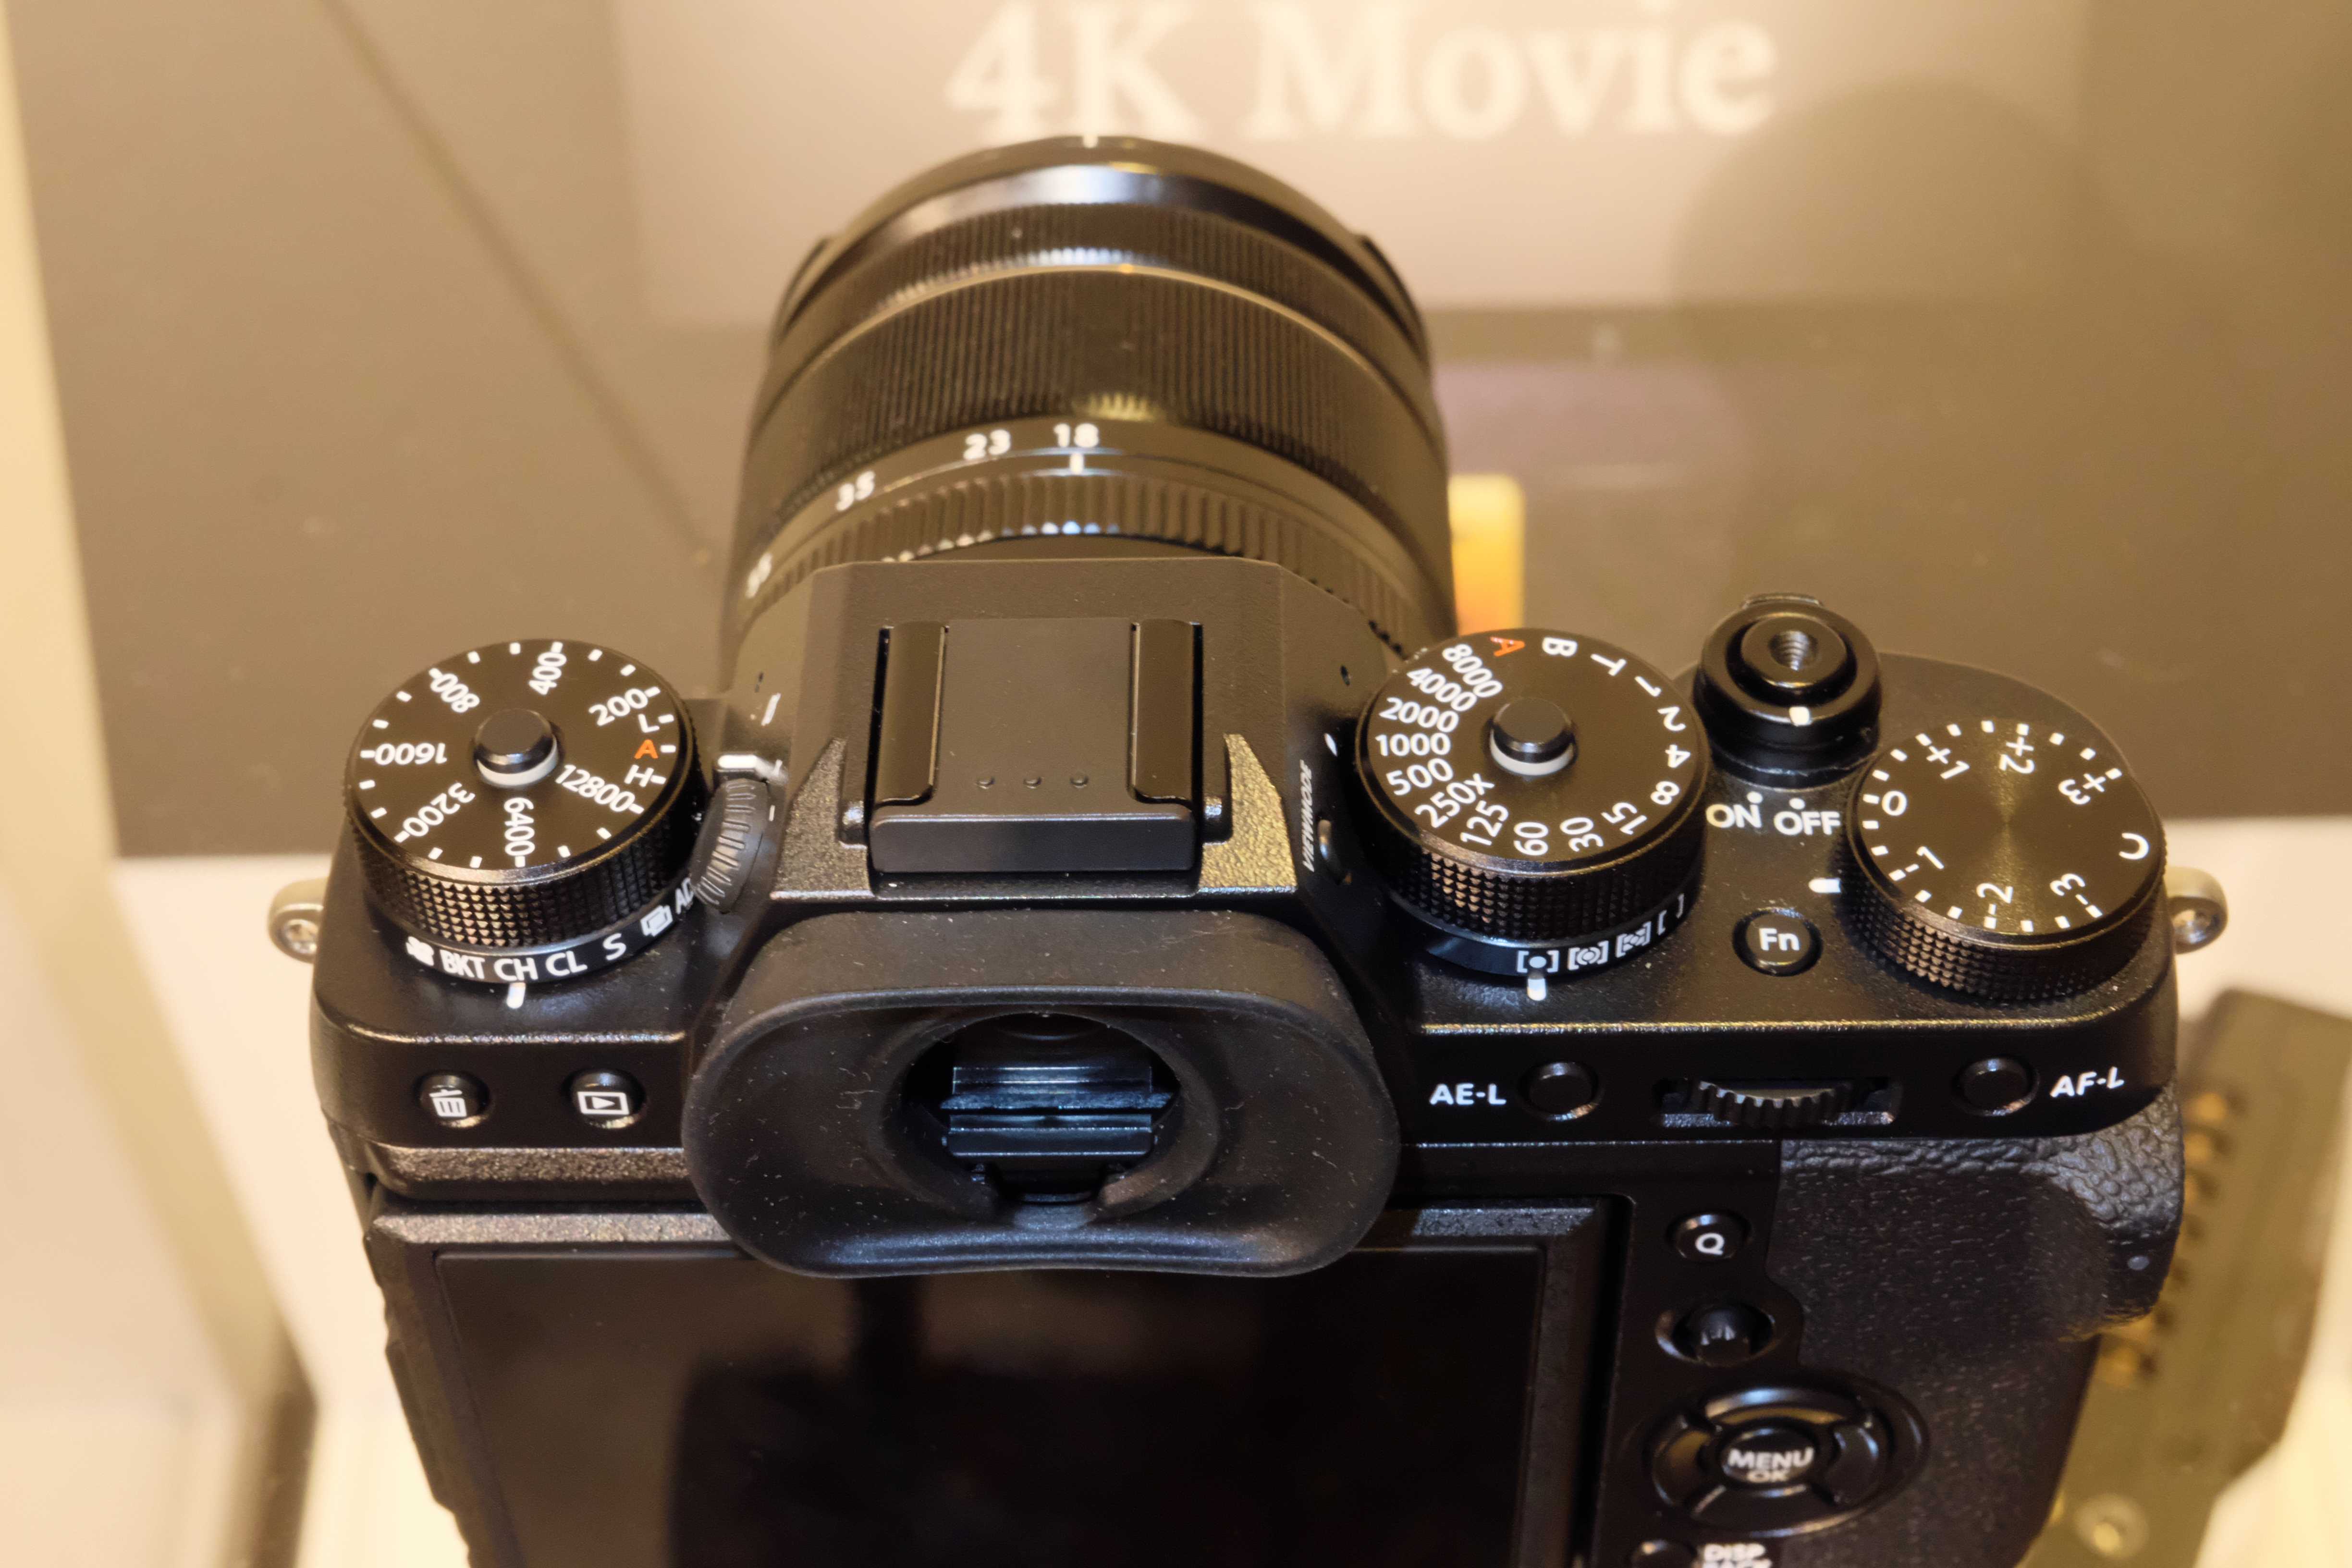 Цифровой фотоаппарат Fujifilm X-T1 - подробные характеристики обзоры видео фото Цены в интернет-магазинах где можно купить цифровую фотоаппарат Fujifilm X-T1